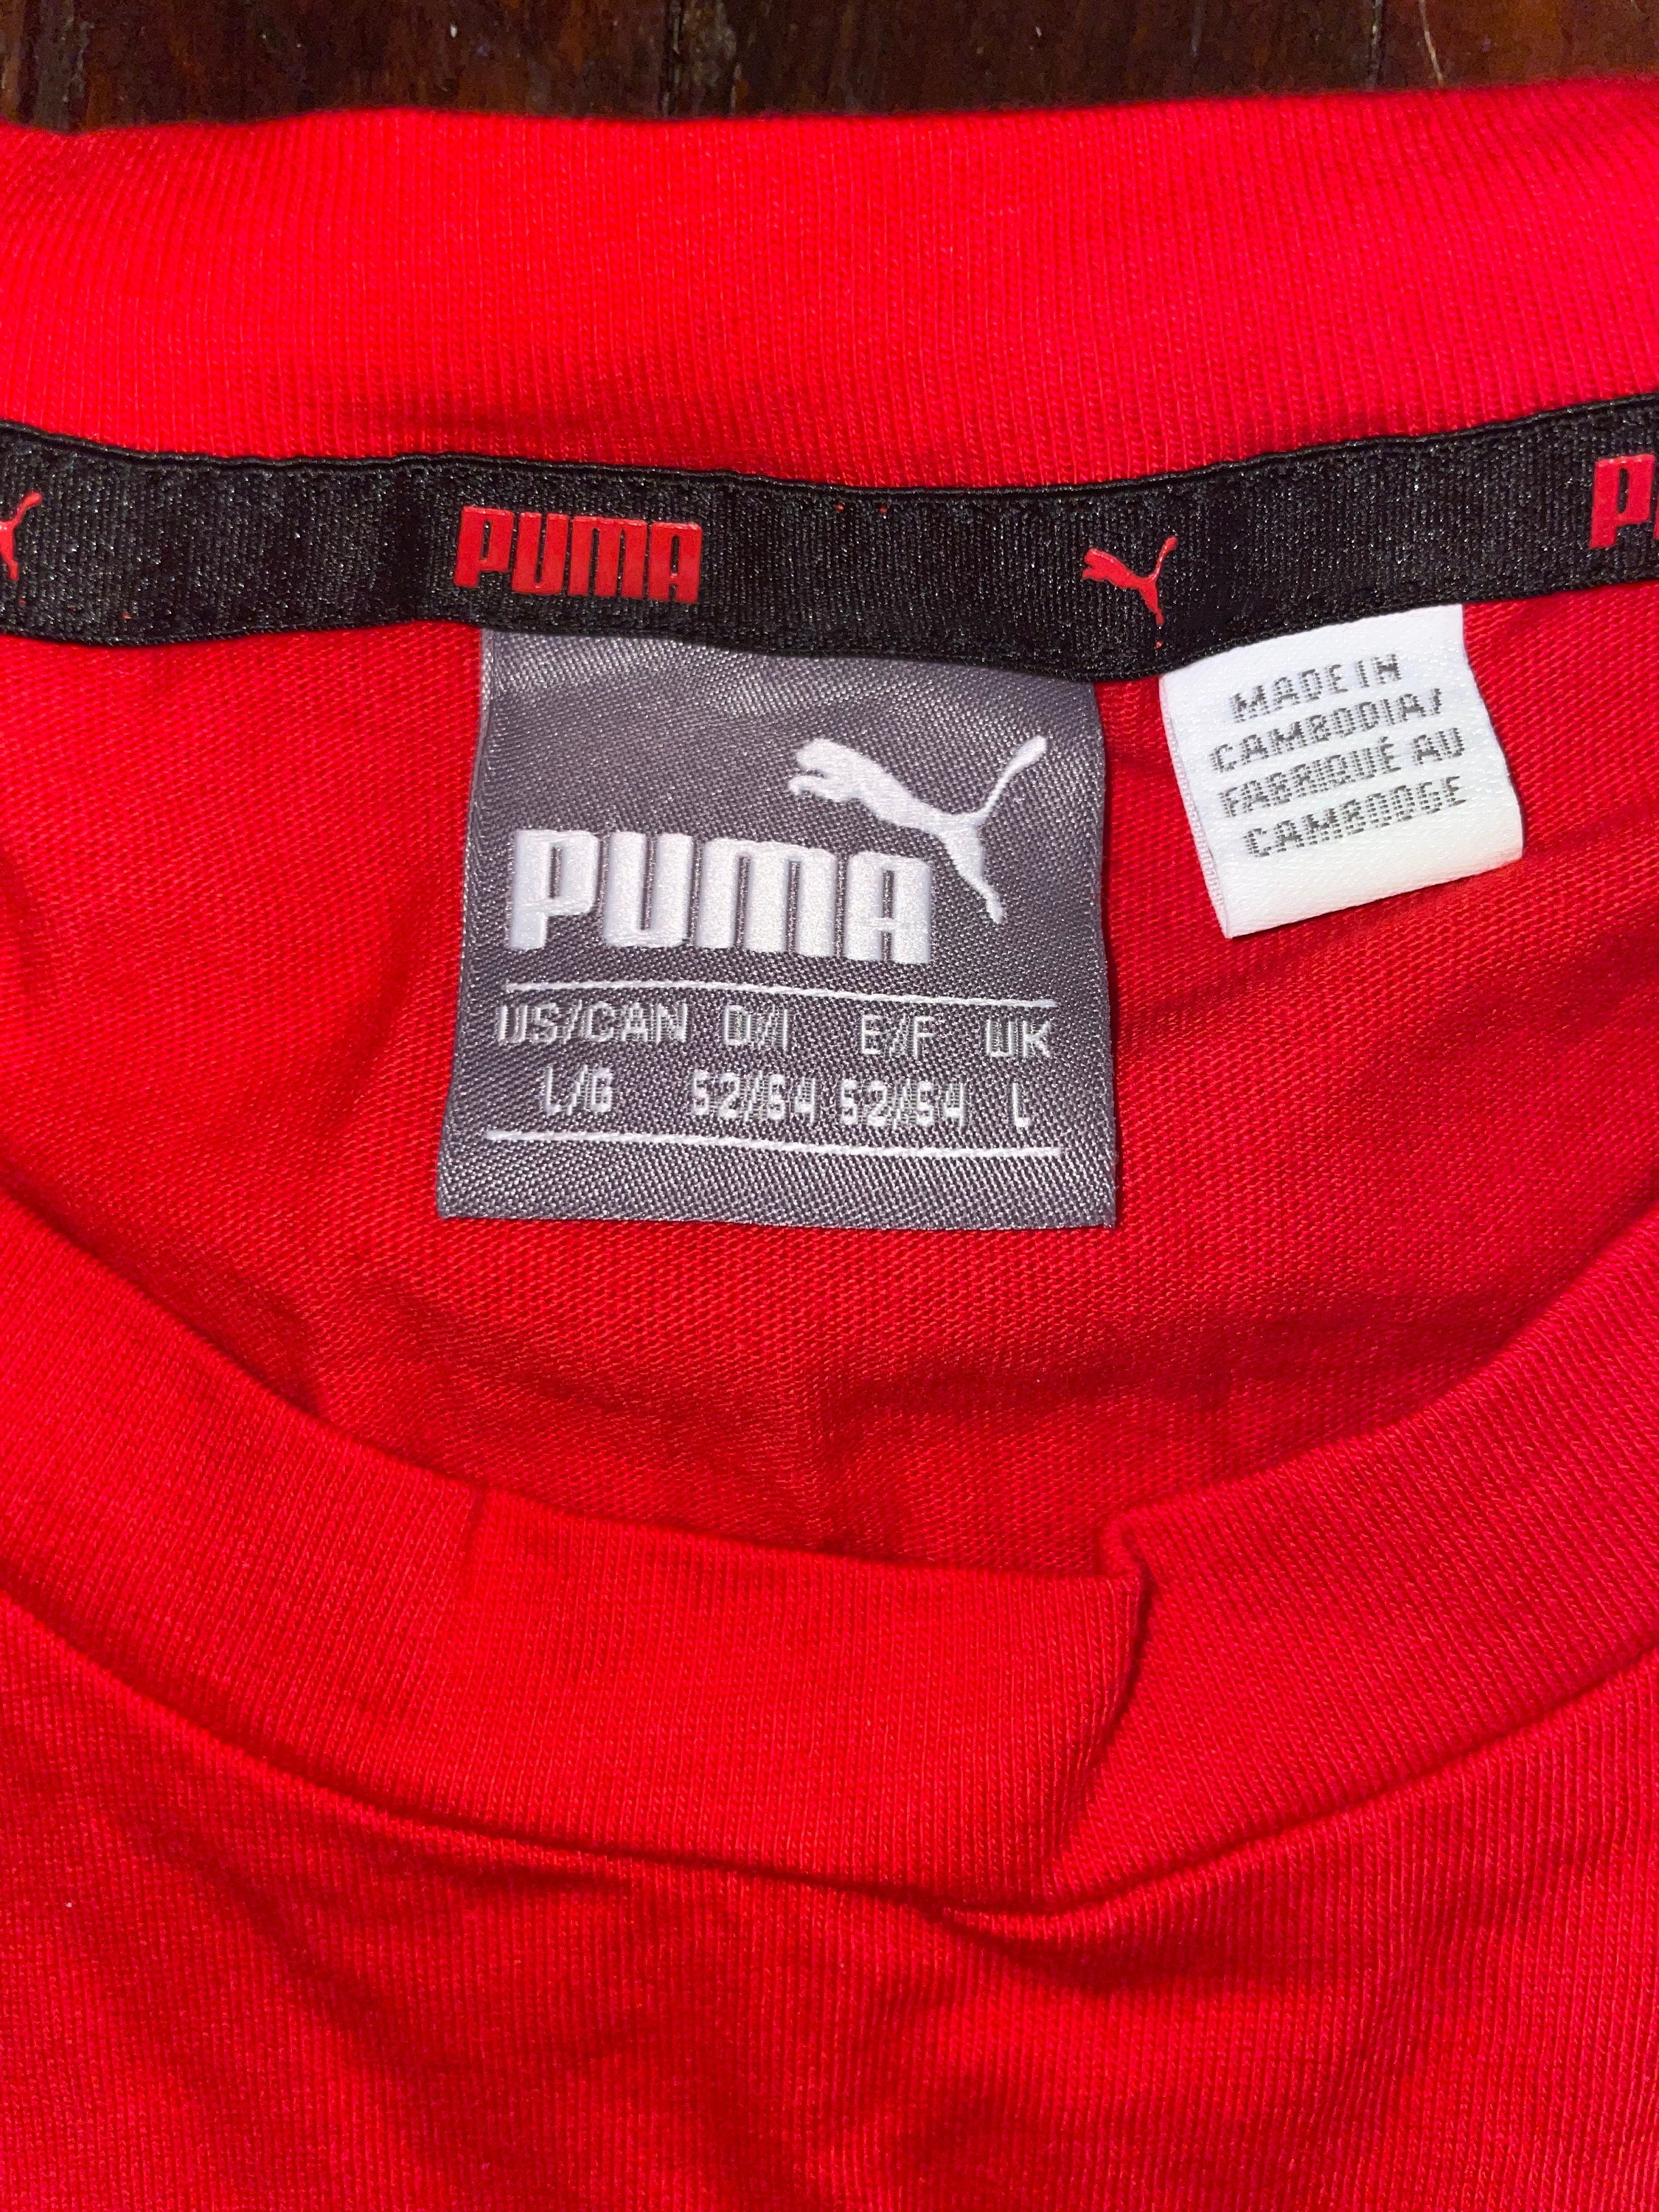 Red and Black PUMA Tshirt - Etsy